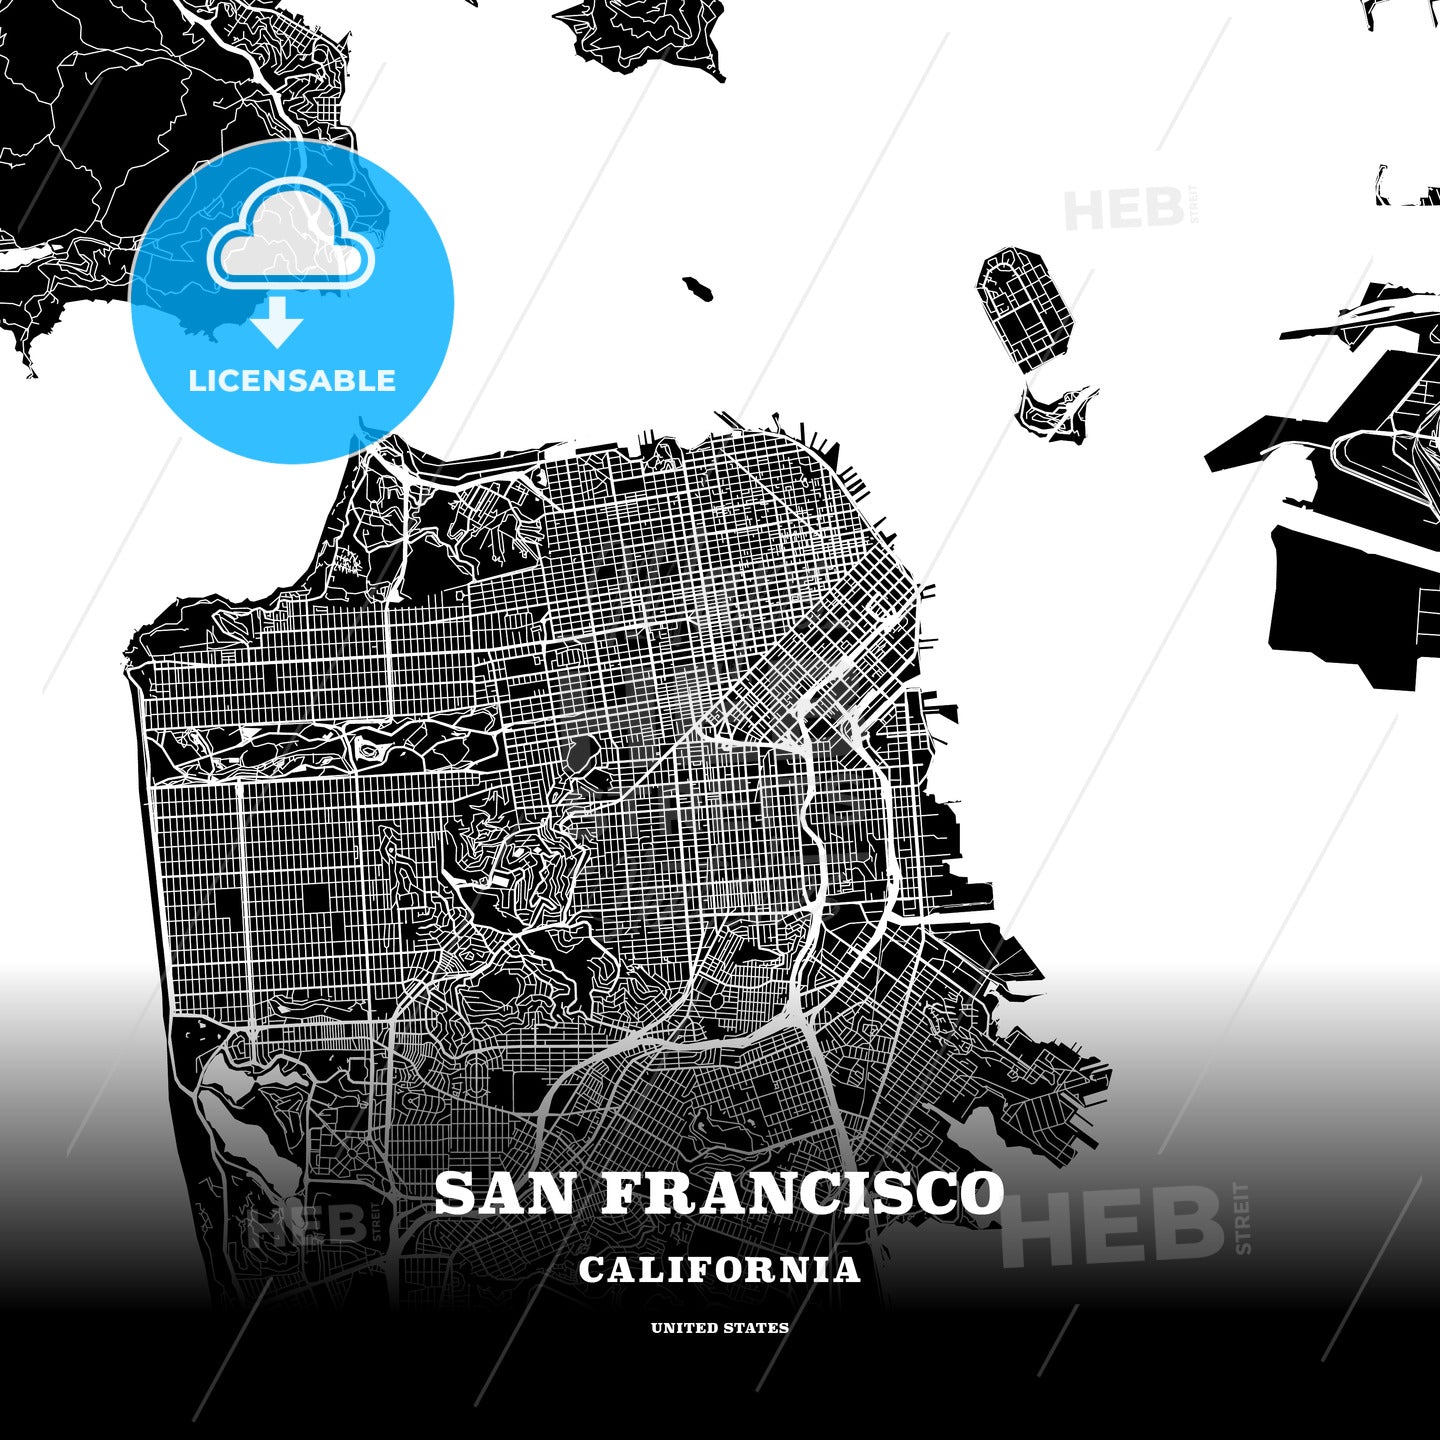 San Francisco, California, USA map